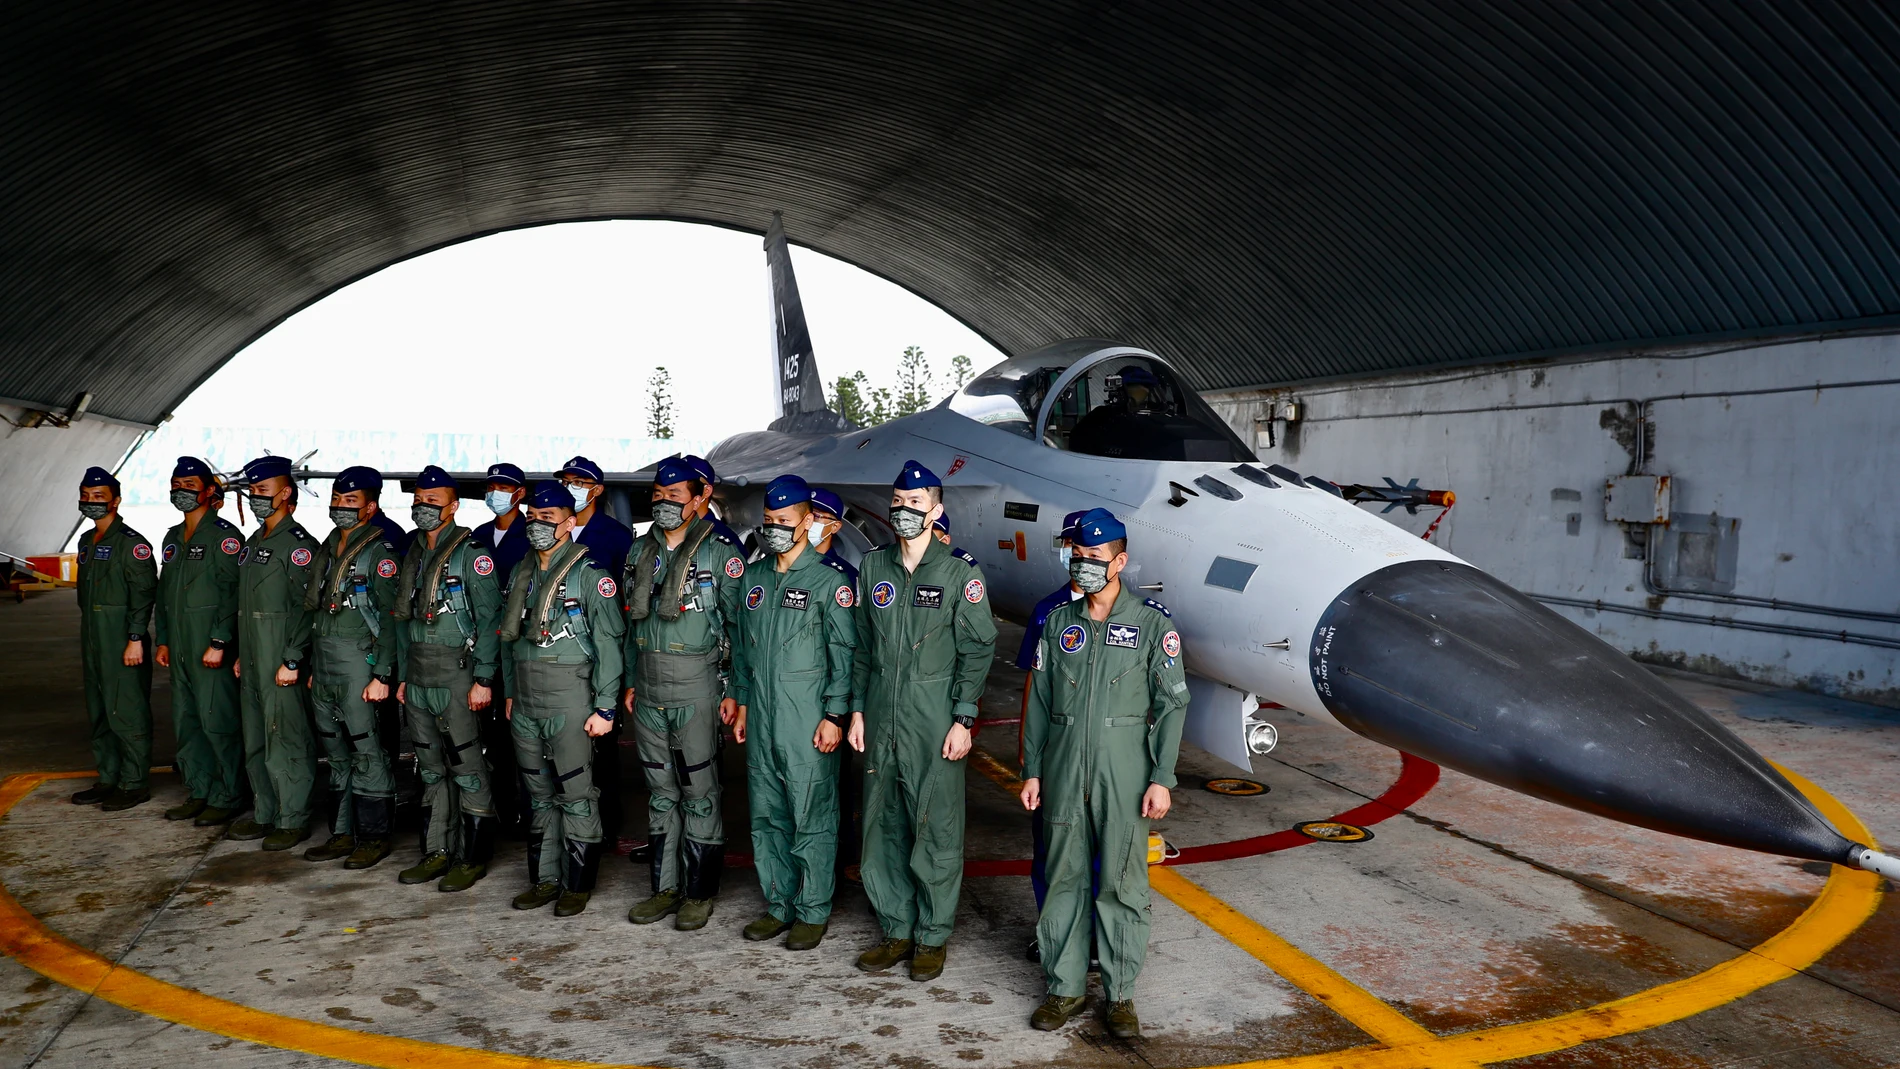 Pilotos de la Fuerza Aérea de Taiwán junto a un AIDC F-CK-1 Ching-Kuo, comúnmente conocido como caza de defensa indígena (IDF), en Penghu